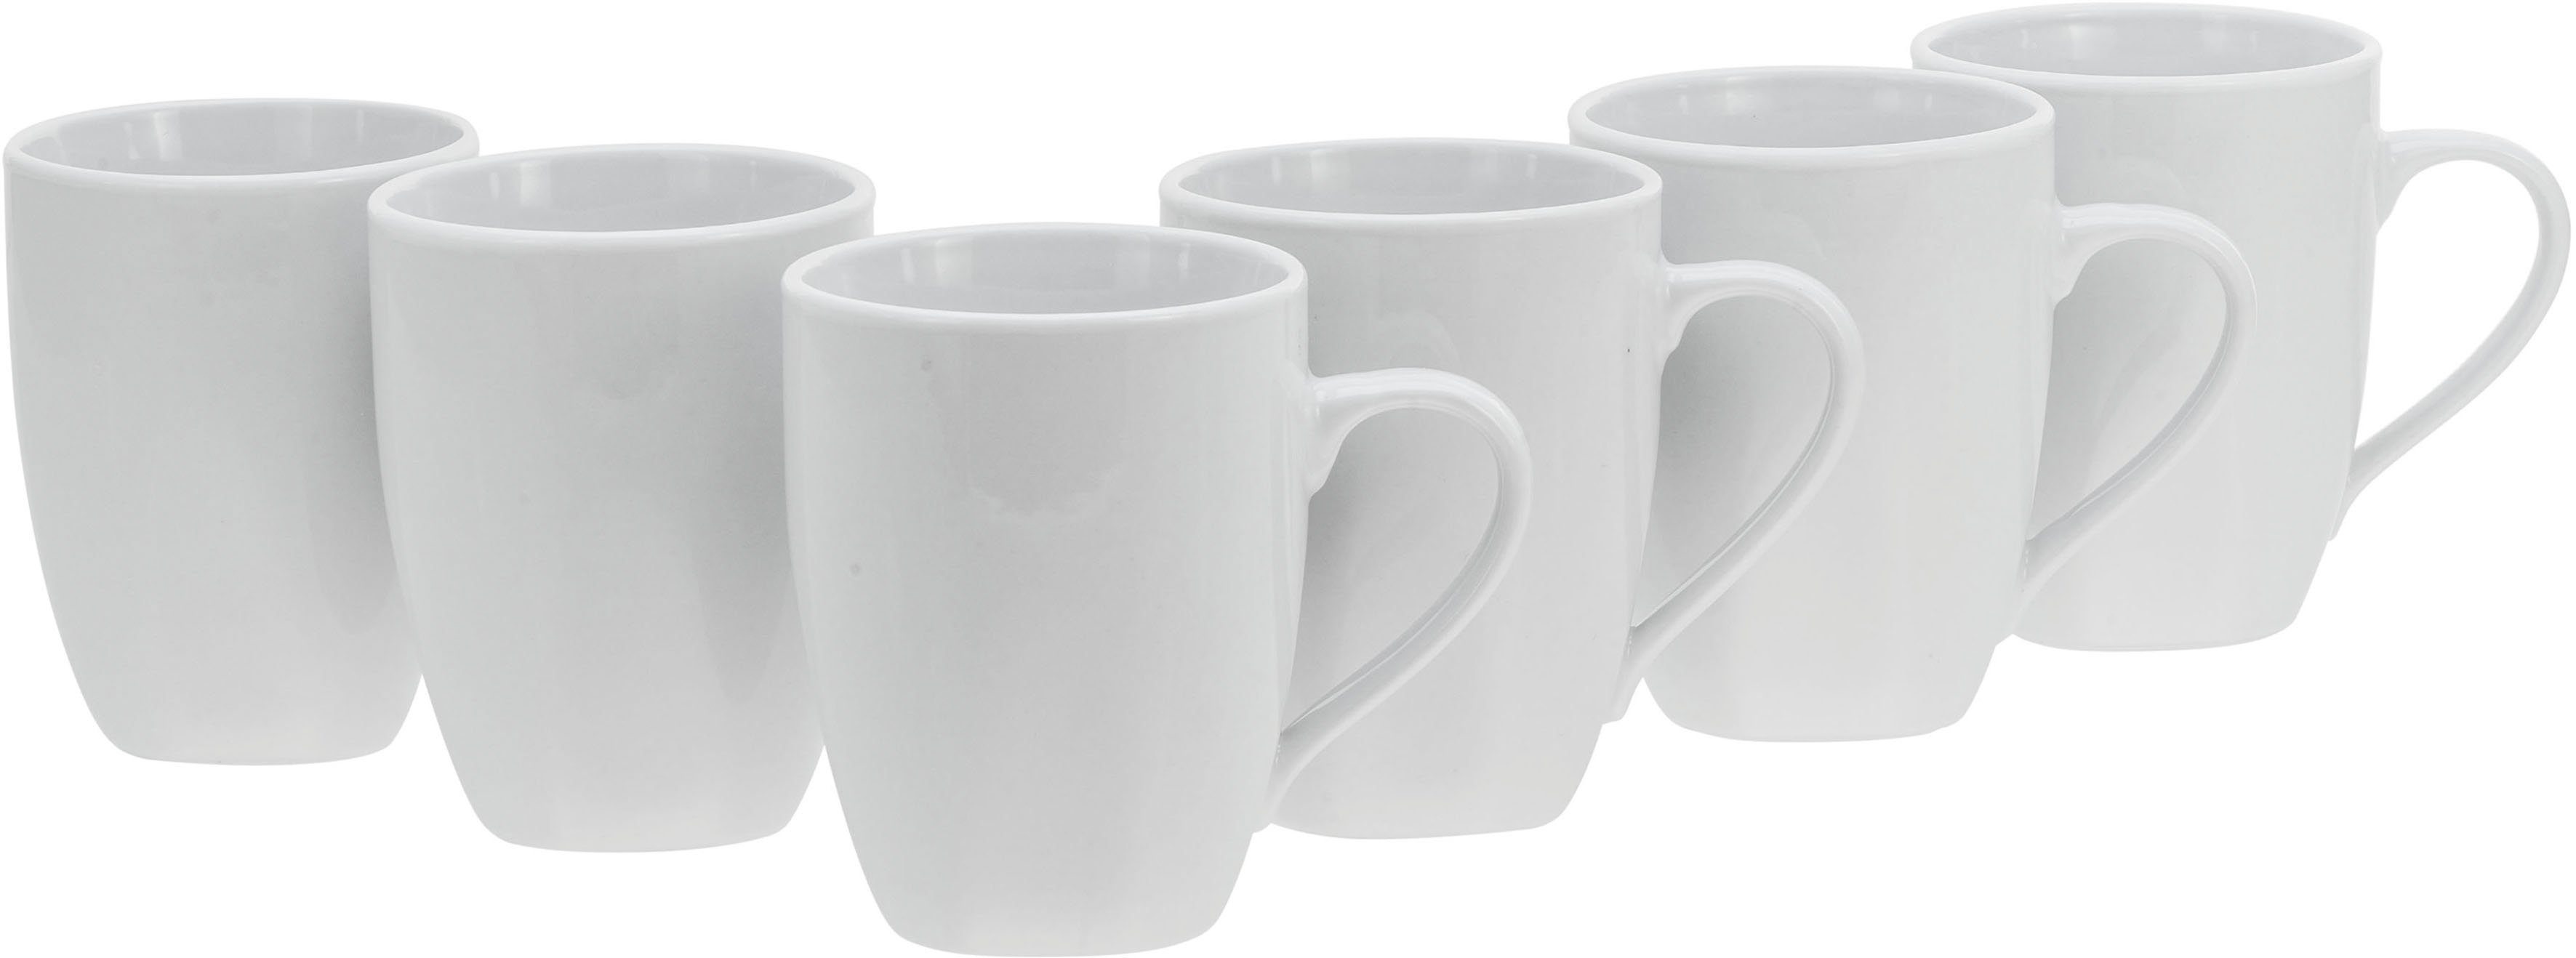 Porzellan, Becher (Kaffee-/Teebecher), Square CreaTable Weiss, ml, 6-teilig 300